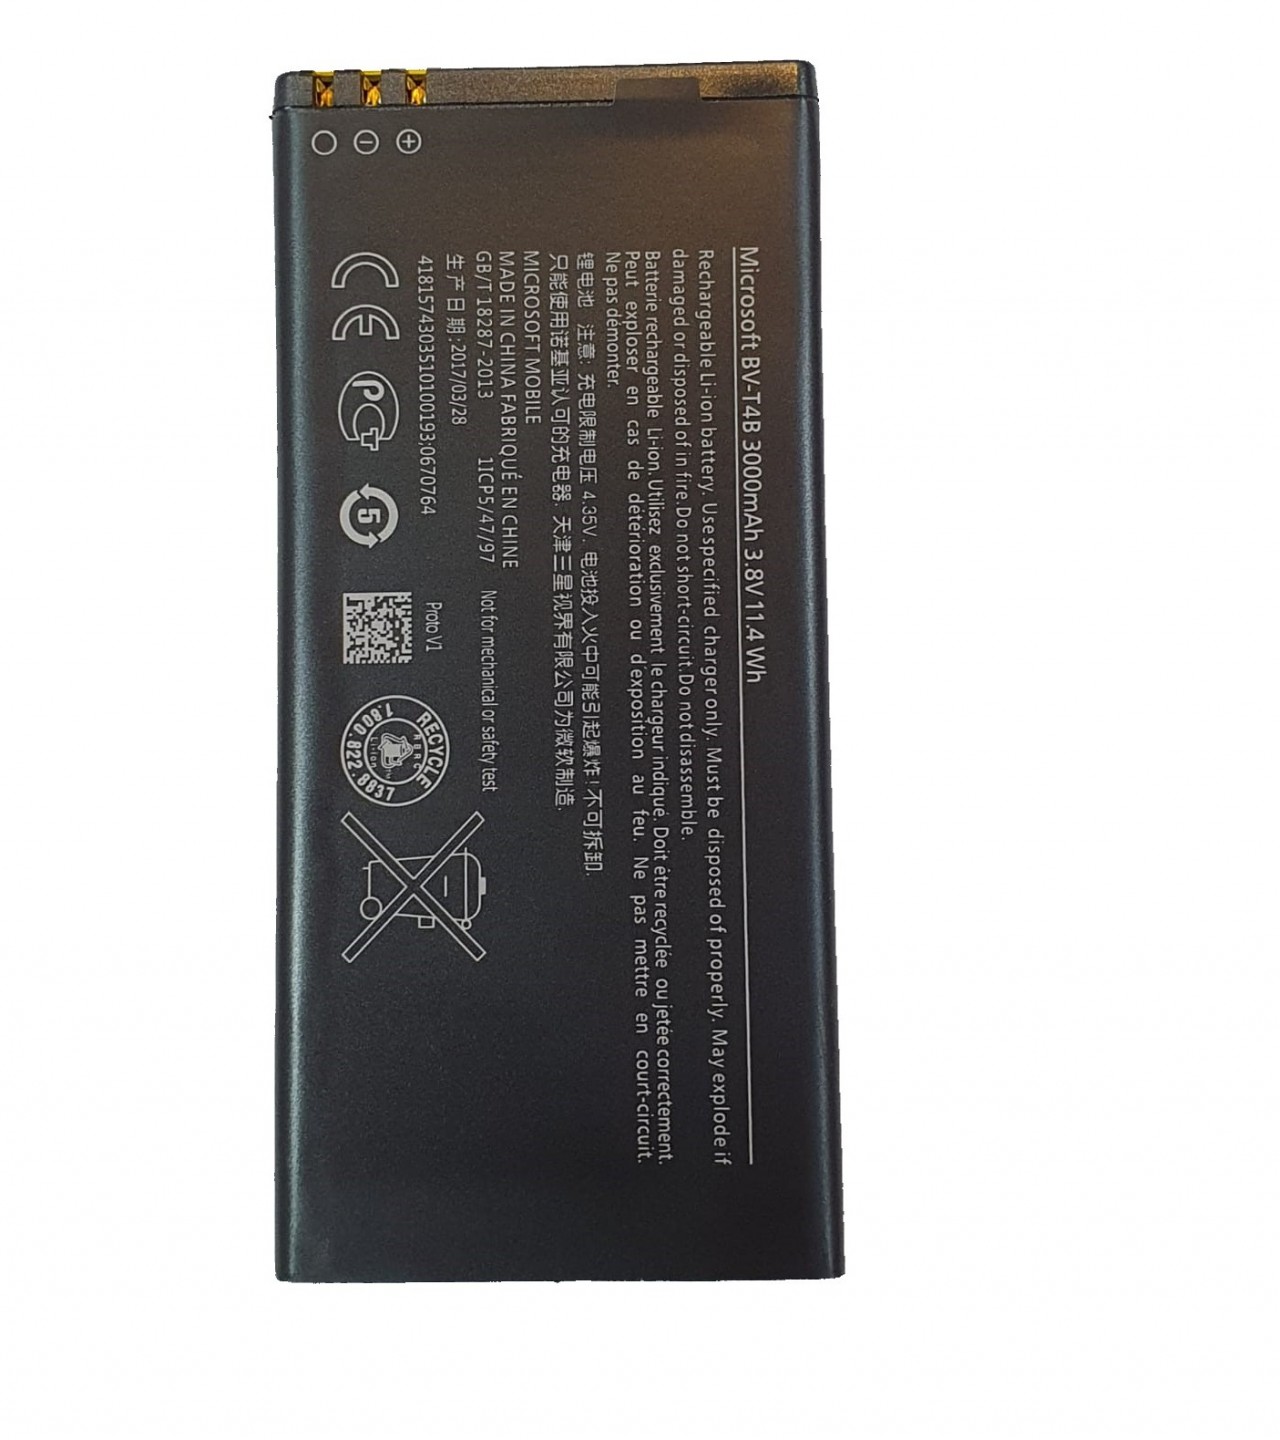 BV-T4B Battery for Nokia Lumia 640XL RM-1096 RM-1062 RM-1063 RM-1064 RM-1066